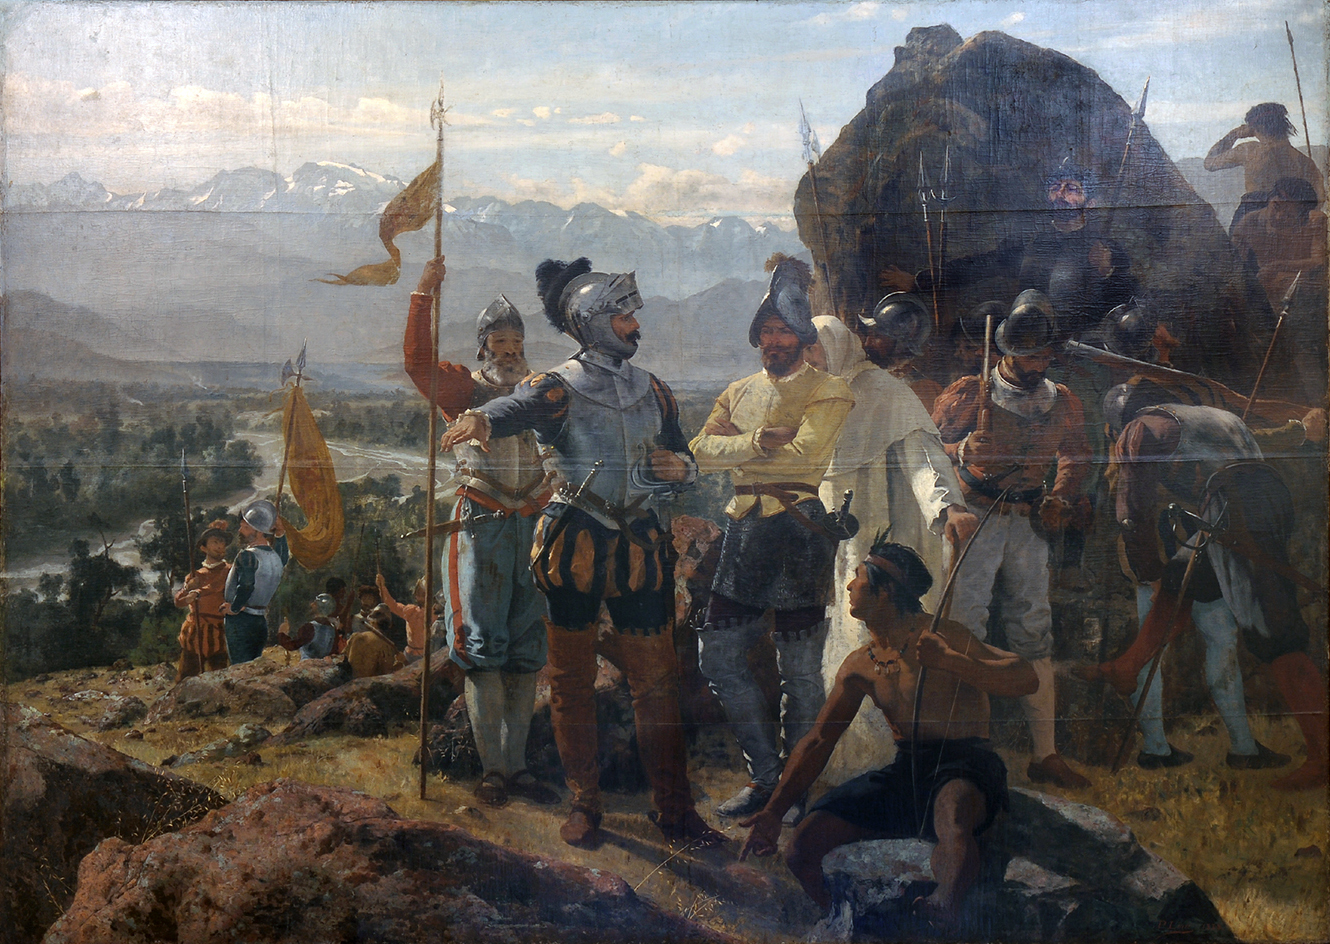 Fundação de Santiago by Pedro Lira - 1888 - 250 x 400 cm 